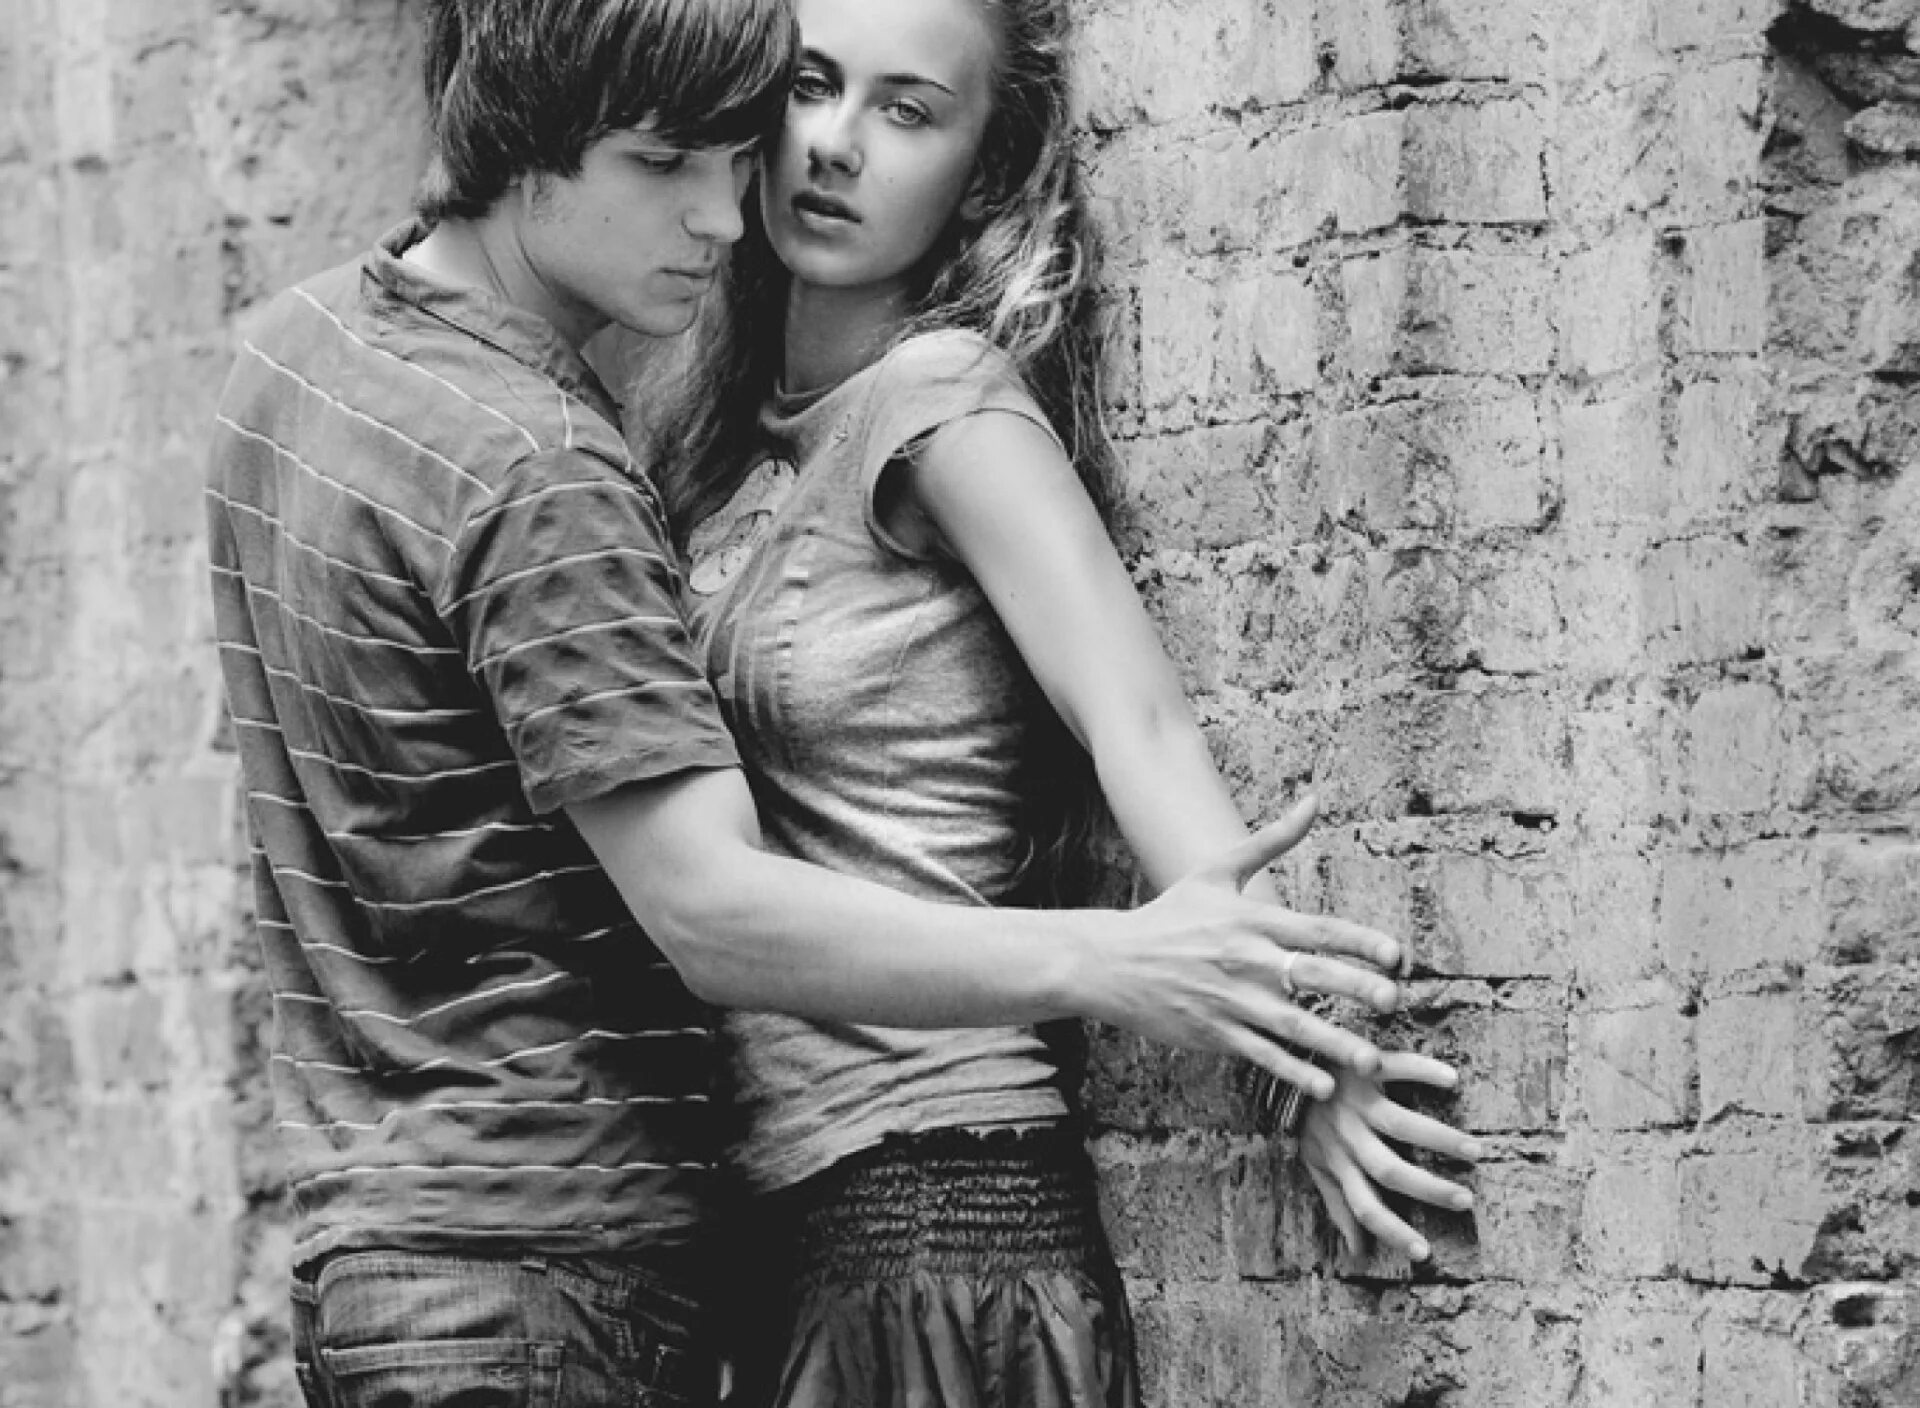 Отсосала в 14 лет. Подростковая влюбленность. Прижал к стене. Влюбленный подросток. Парень и девушка у стены.